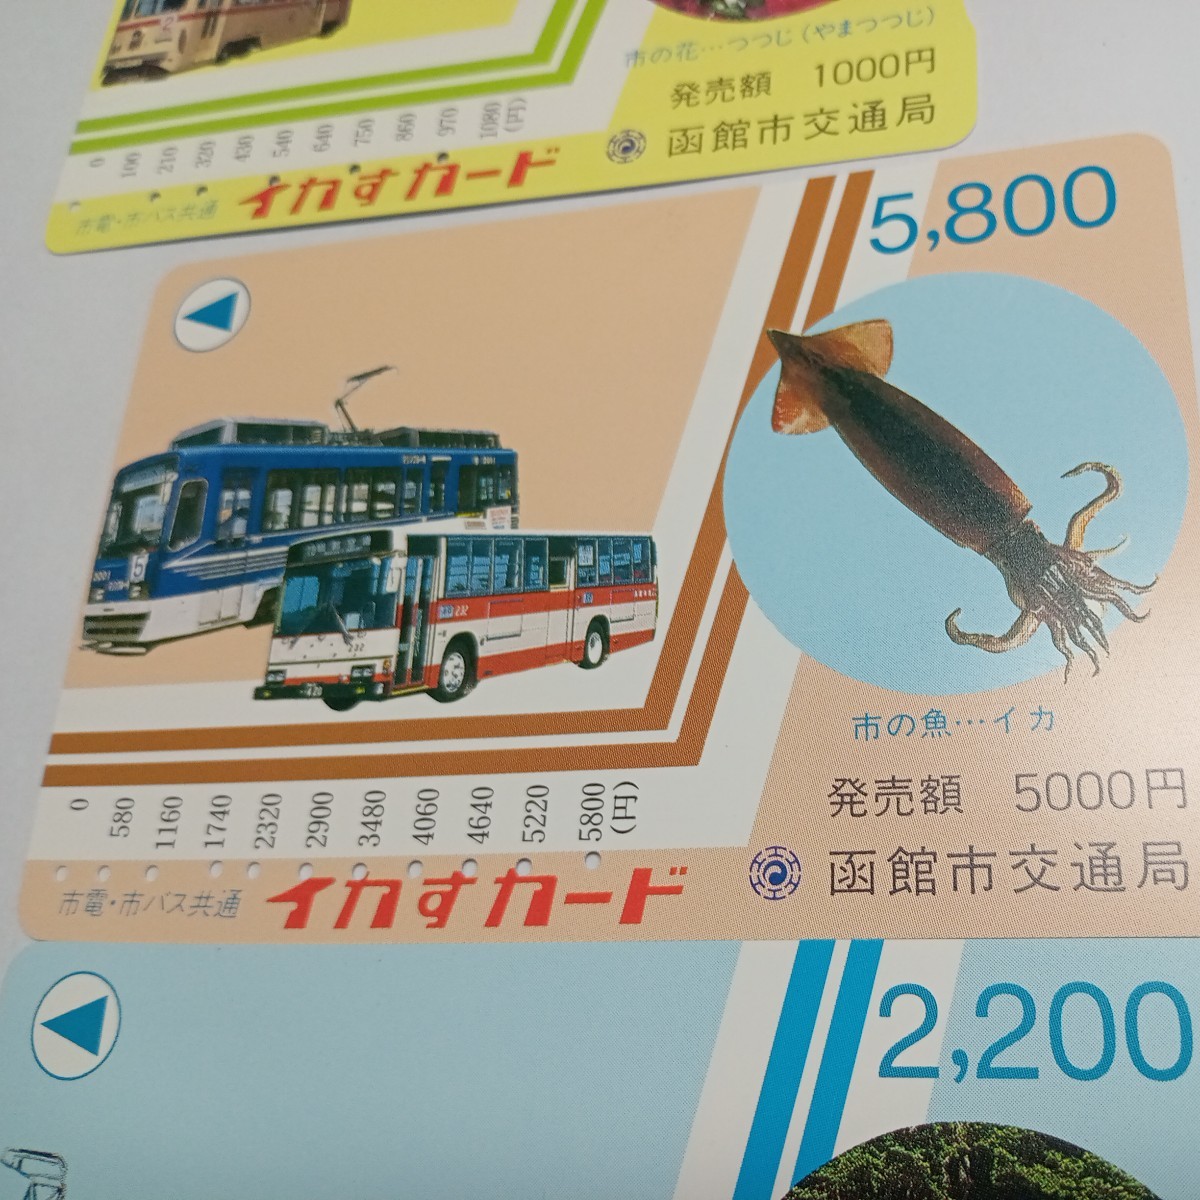  Hakodate город транспорт отдел Hakodate автобус использованный . магнитный bus card 11 шт. комплект 